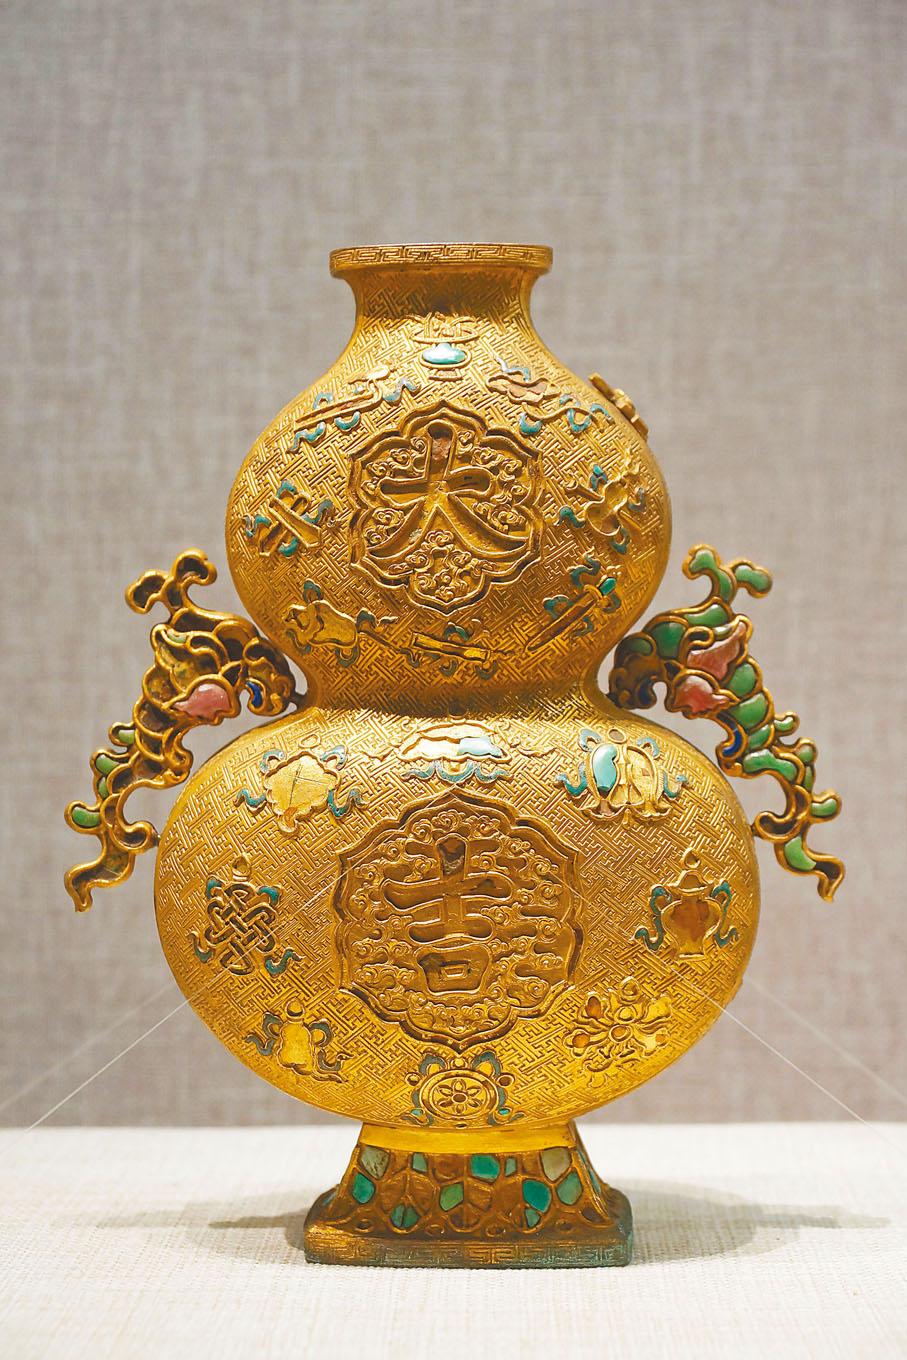 ◆銅鍍金葫蘆式瓶